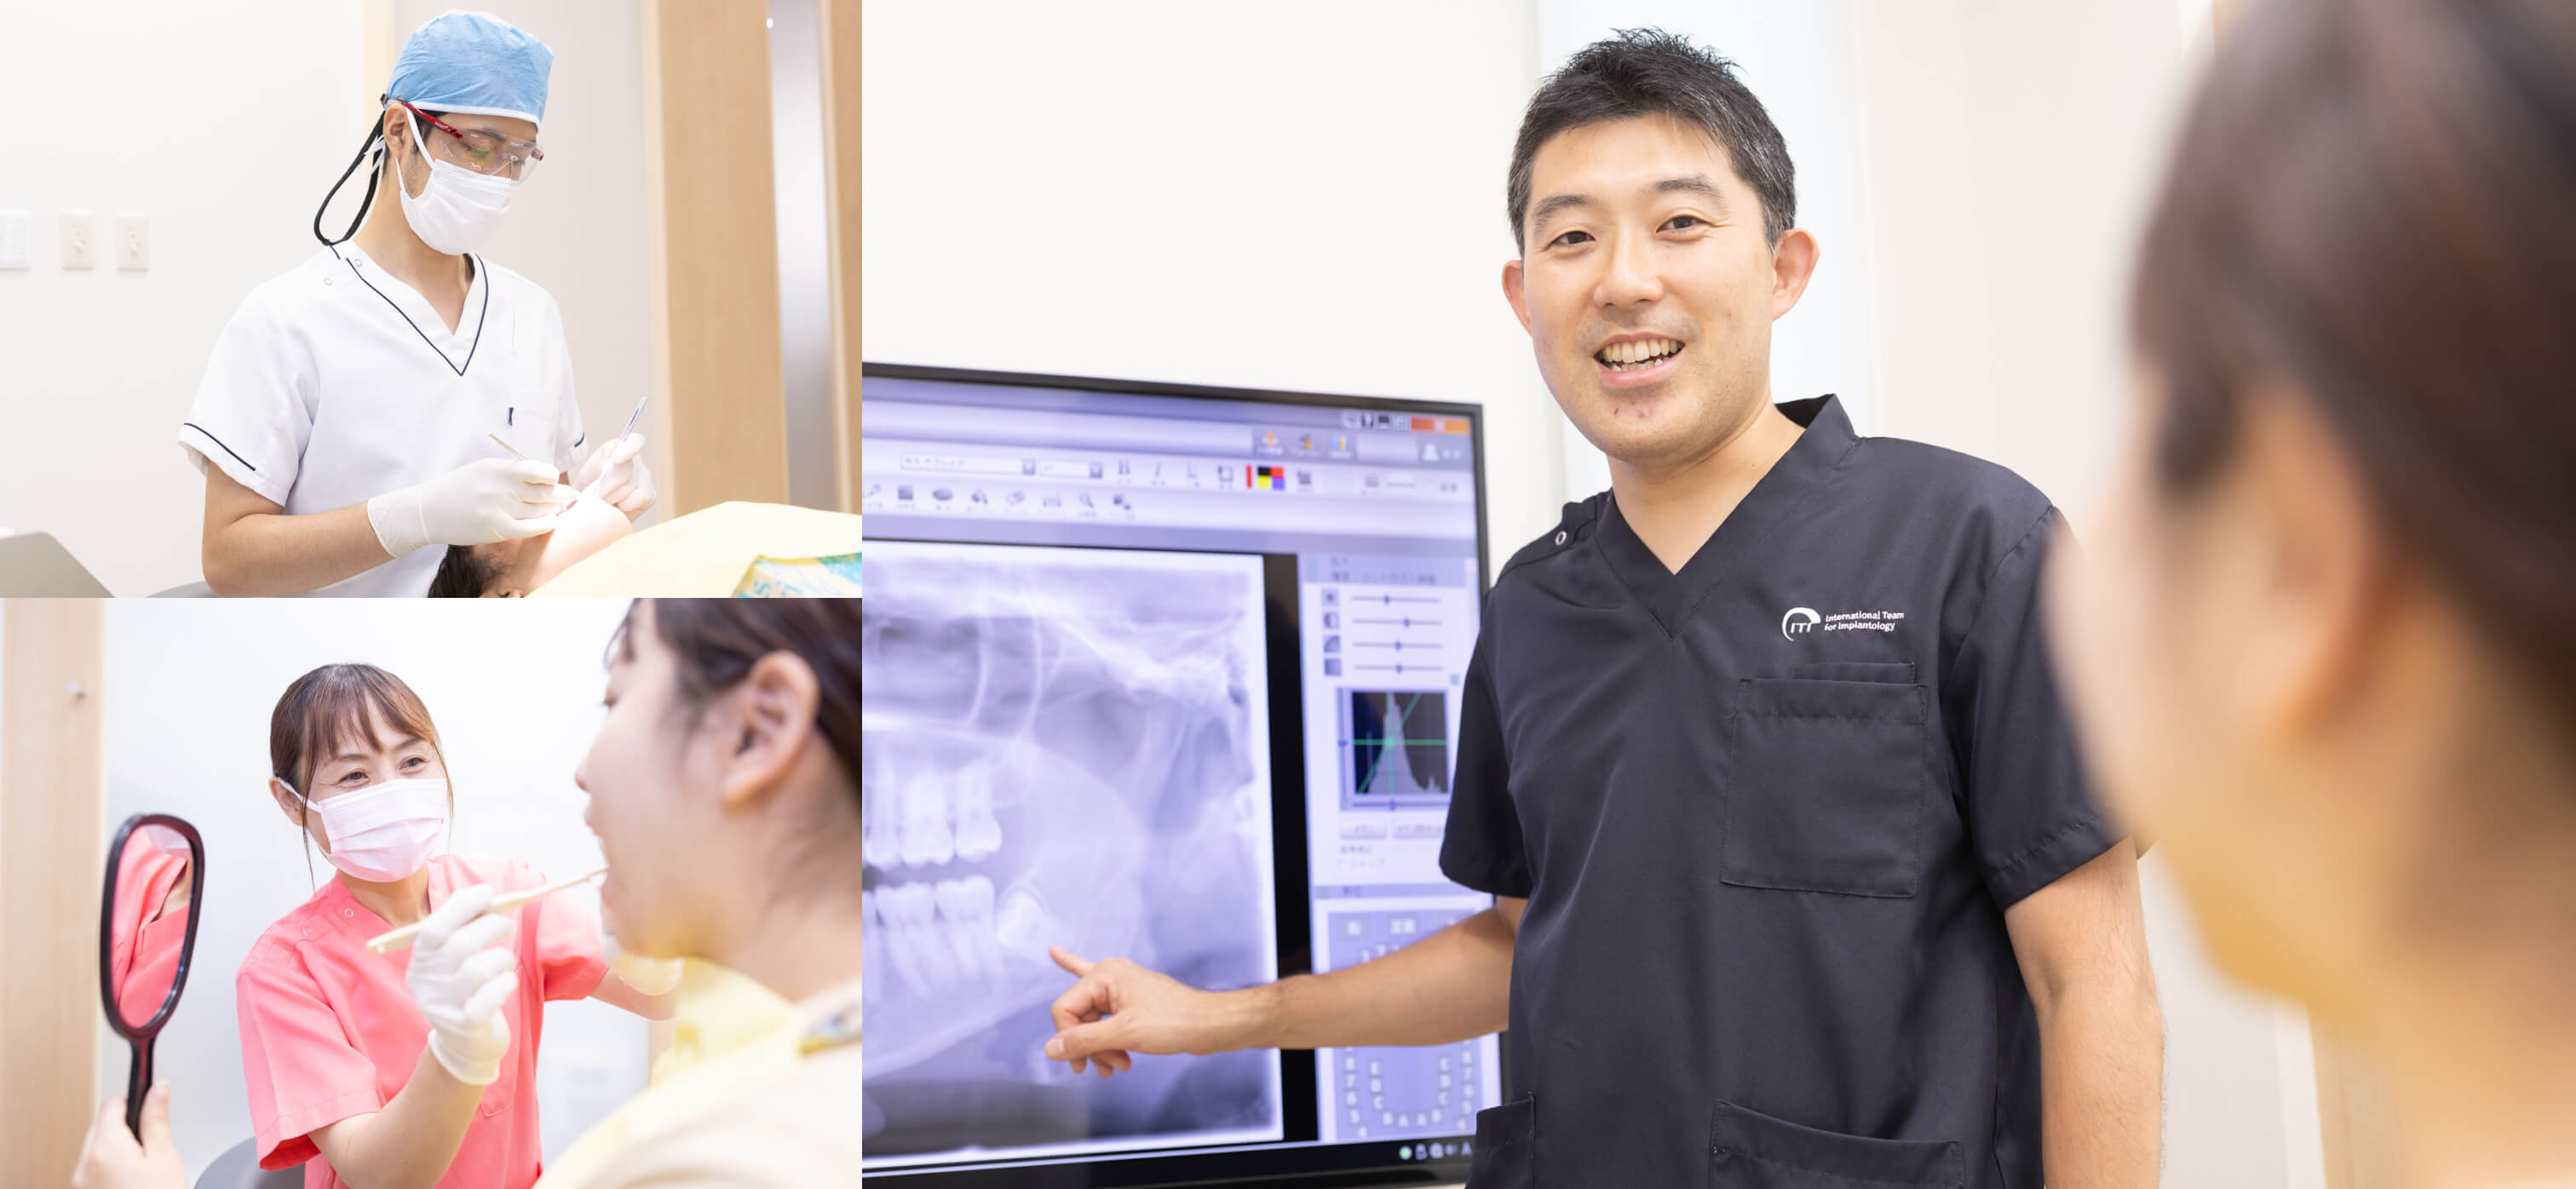 日本補綴 歯科学会 専門医在籍 患者様の人生を豊かに 奥歯でしっかり噛めることで 健康寿命を伸ばす治療を